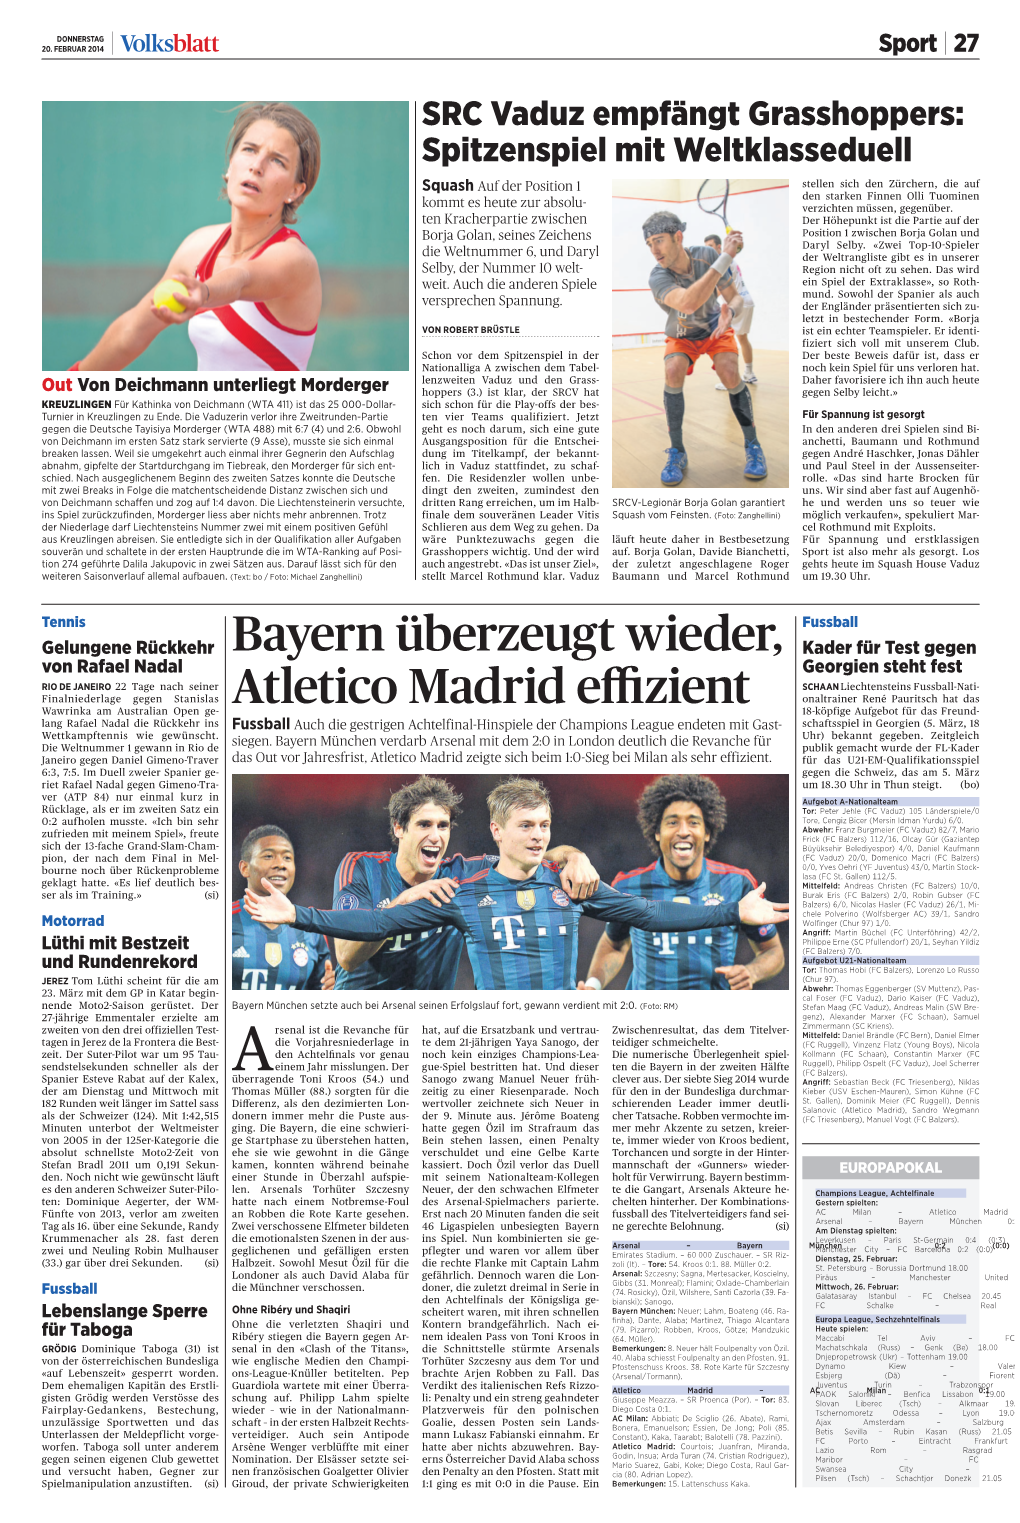 Bayern Überzeugt Wieder, Atletico Madrid Effizient